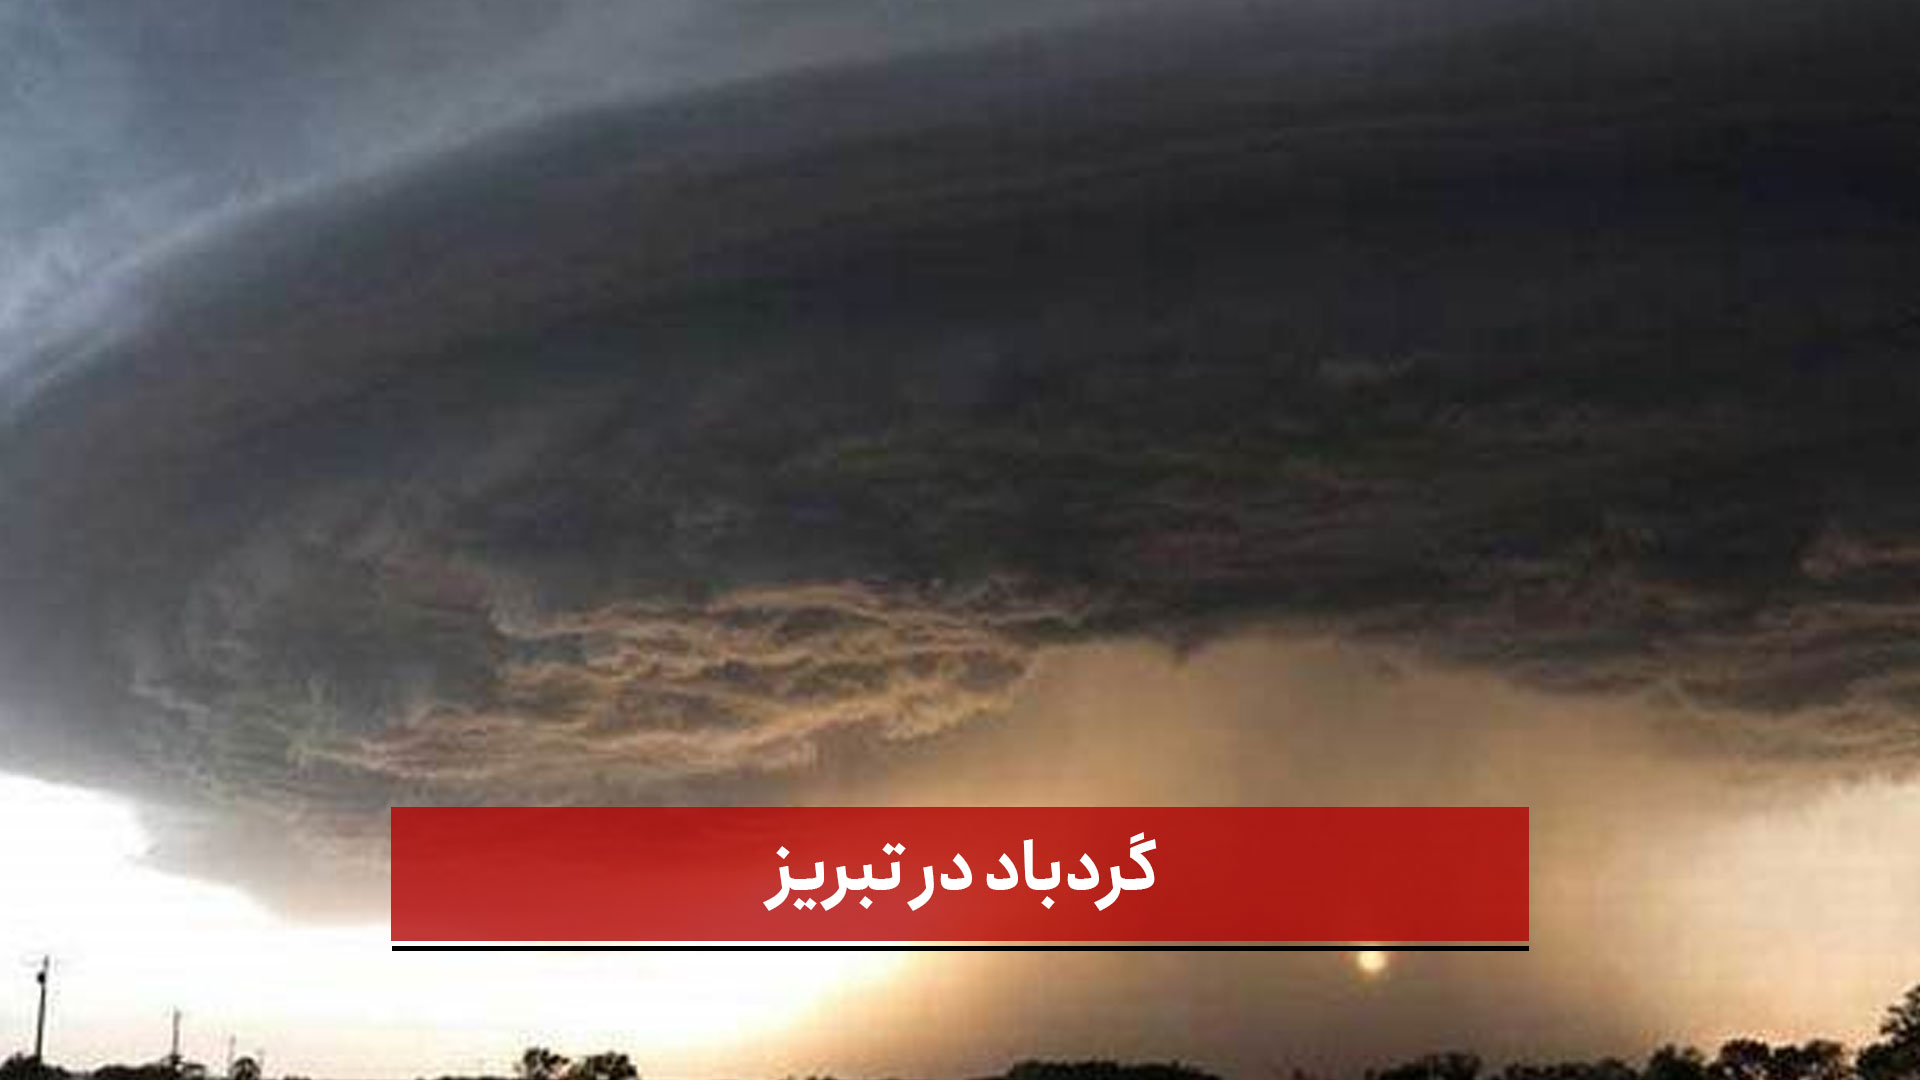 فیلم | گردباد در تبریز